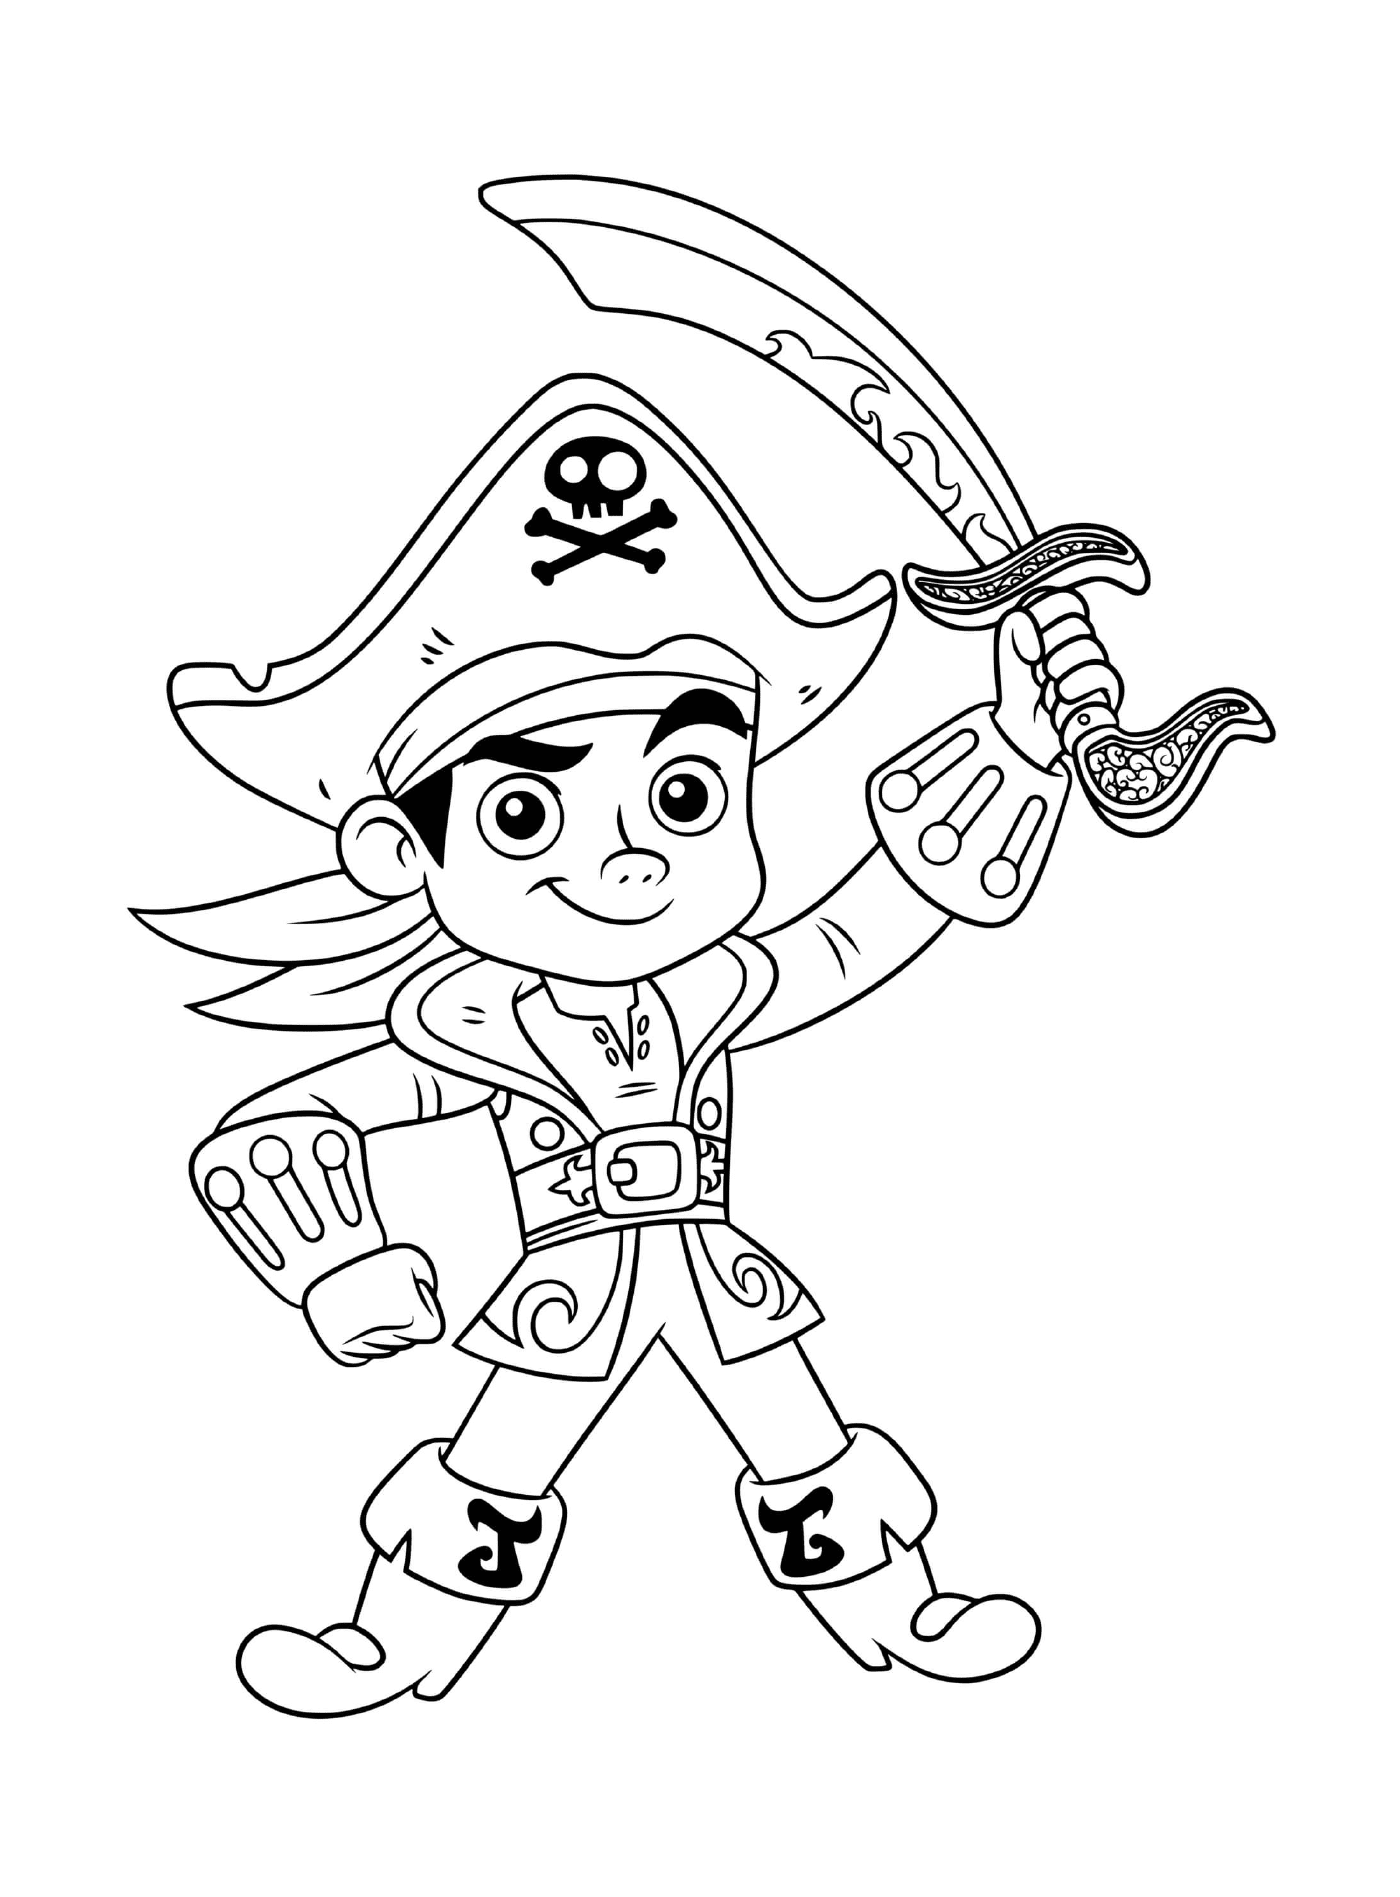  海盗男孩杰克勇敢 